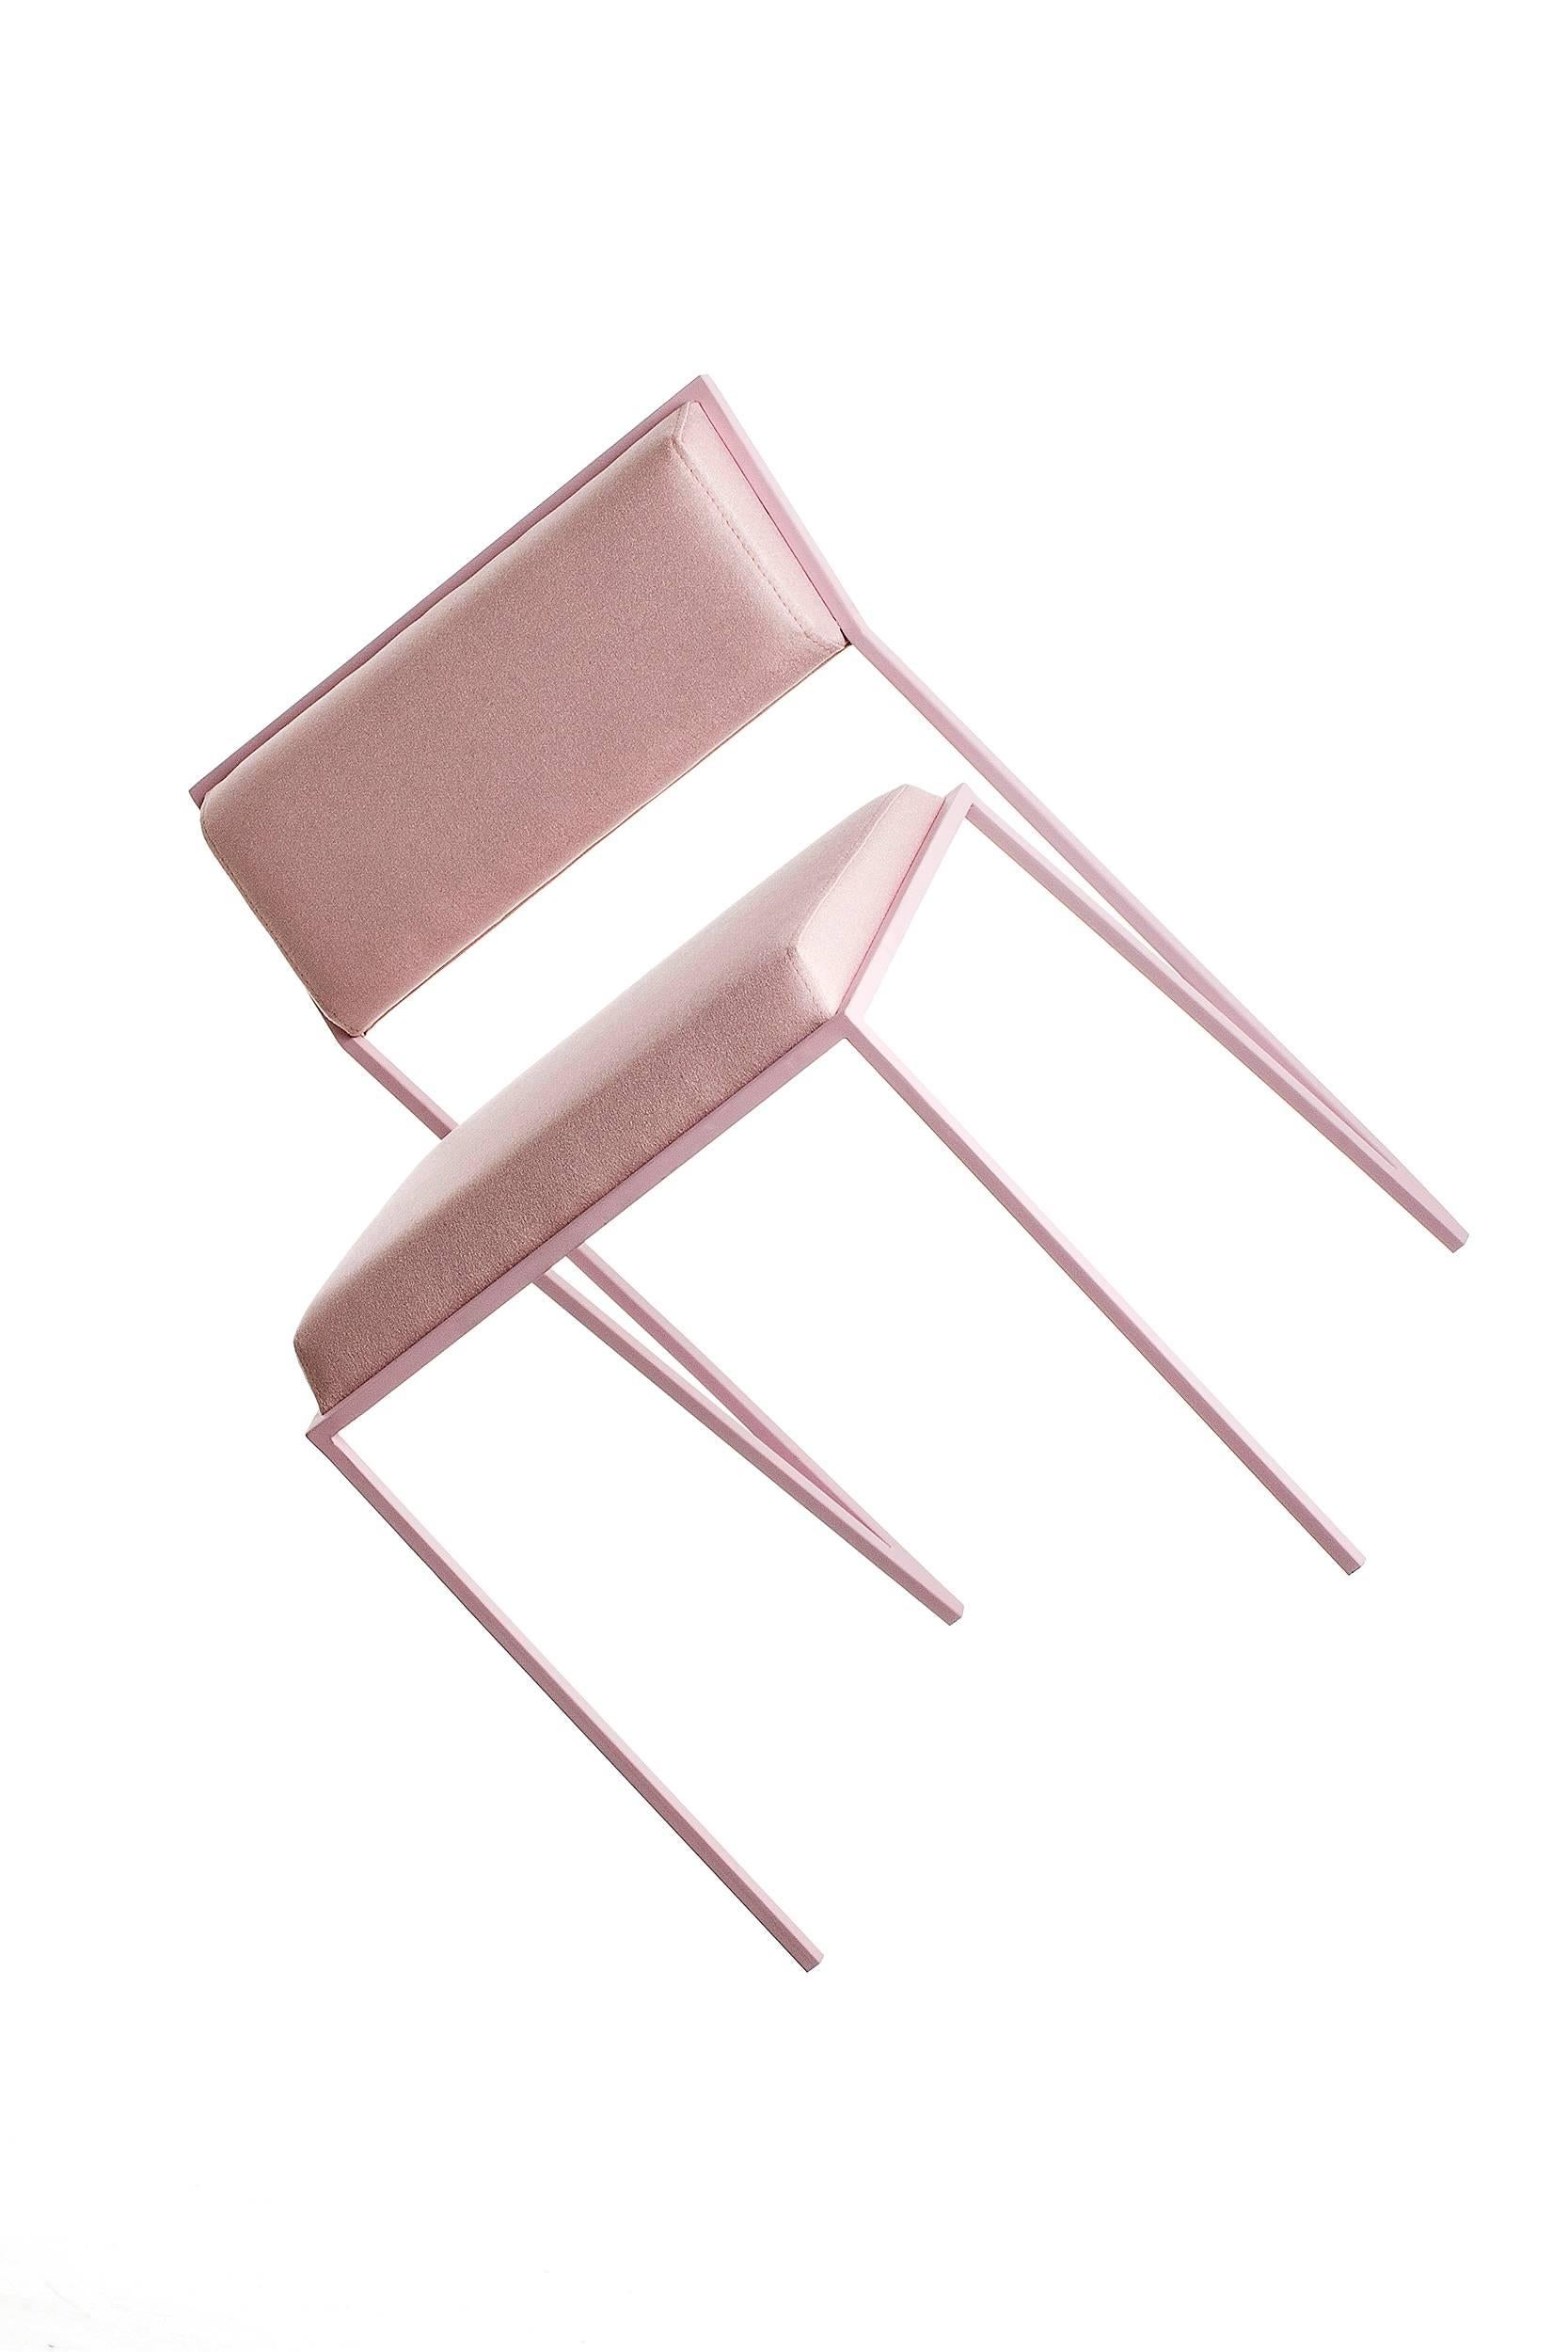 Minimalist Chair in Steel, Brazilian Contemporary Design, Lavender 1